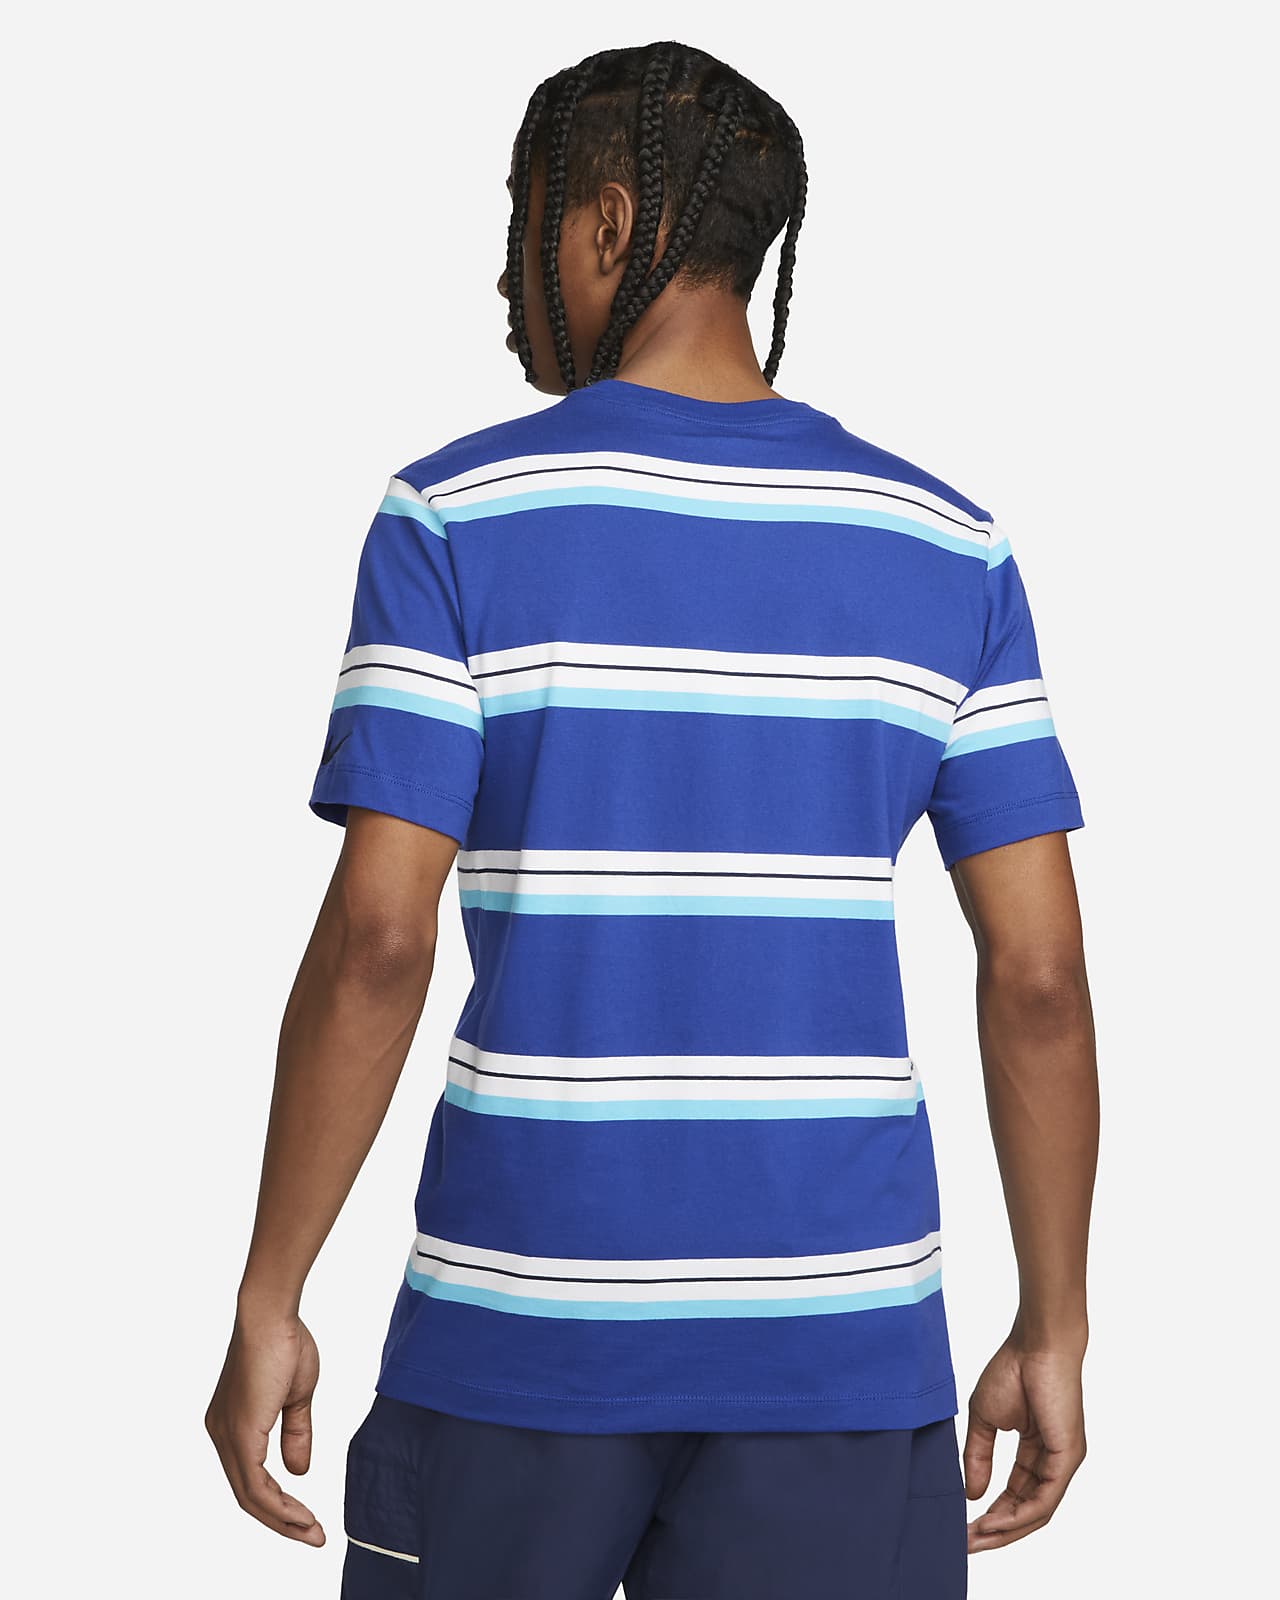 snel Vervelend architect Chelsea FC Men's Soccer T-Shirt. Nike.com